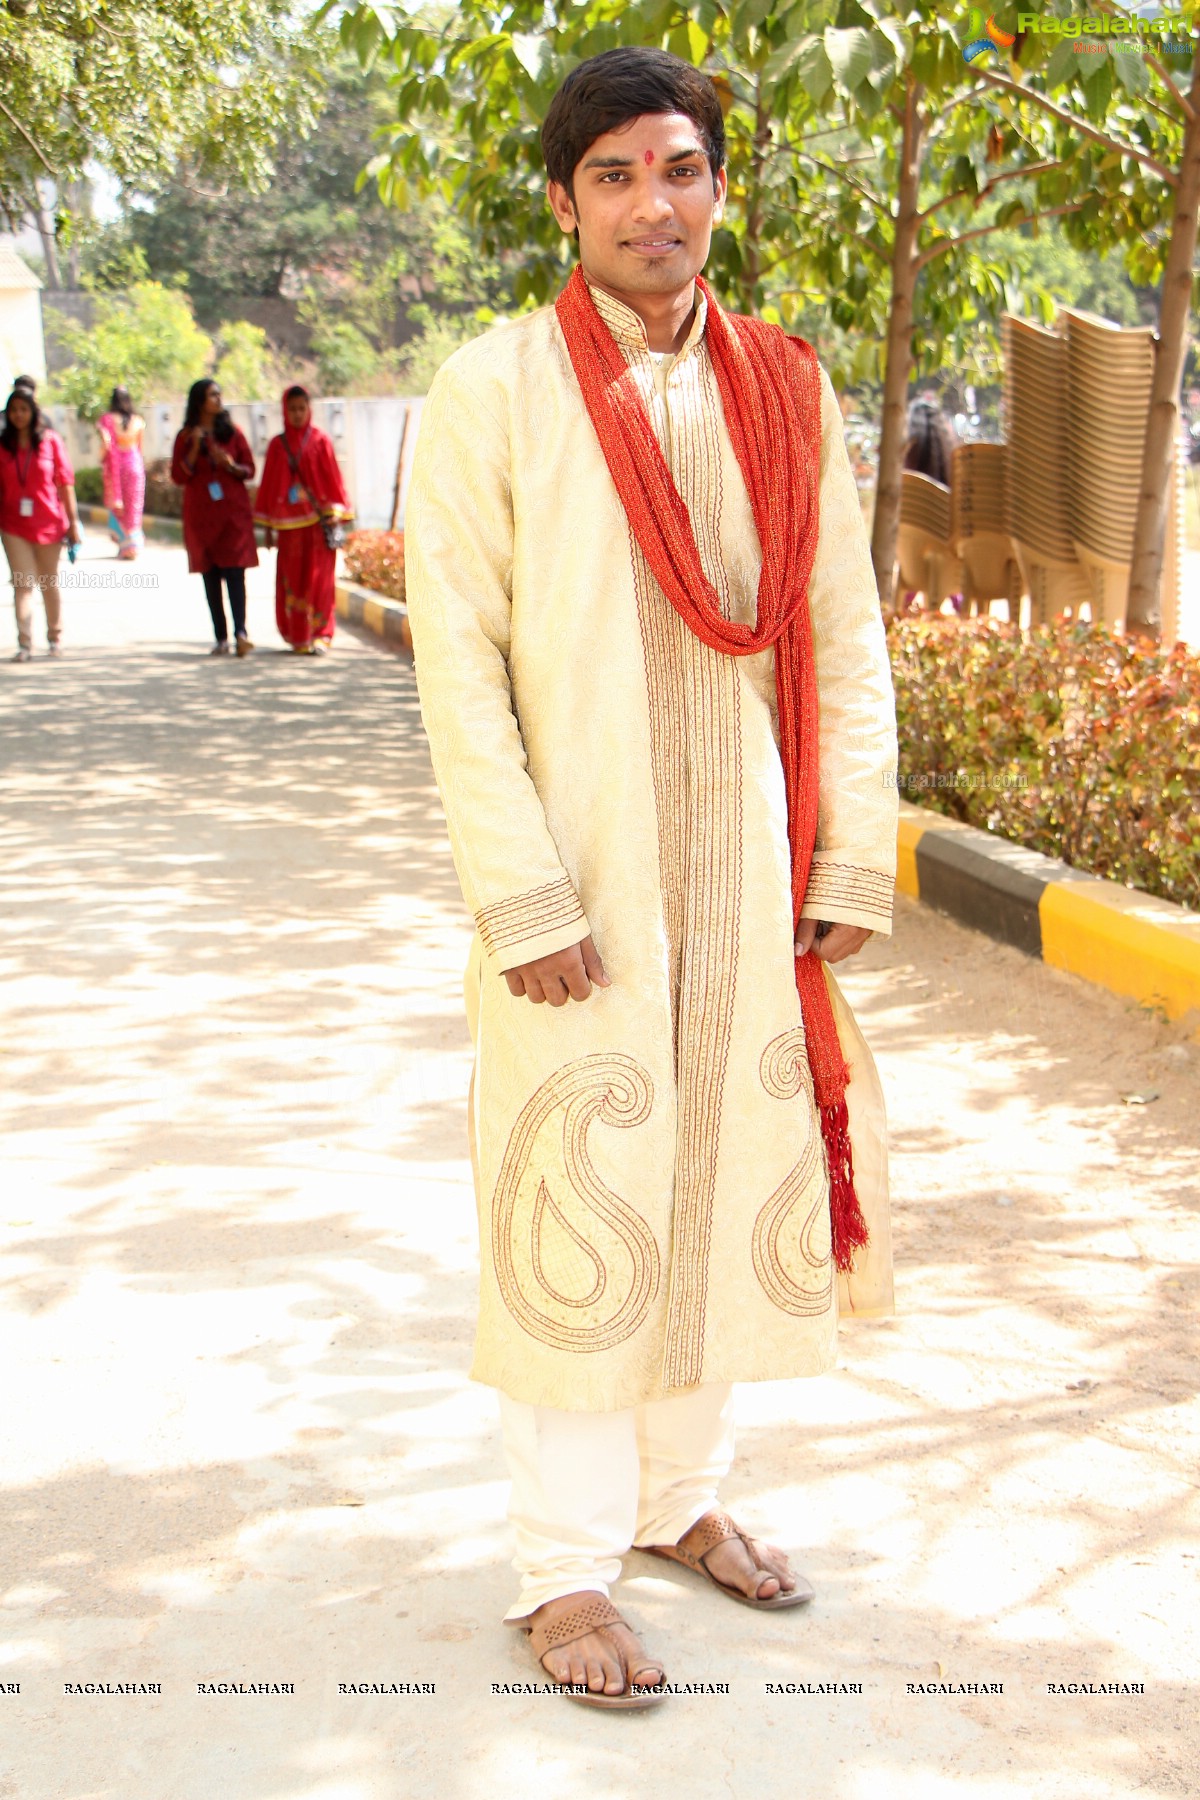 Indradhanush: Bhavan's Vivekananda College Yuva Mahotsav 2013 (Day 1)